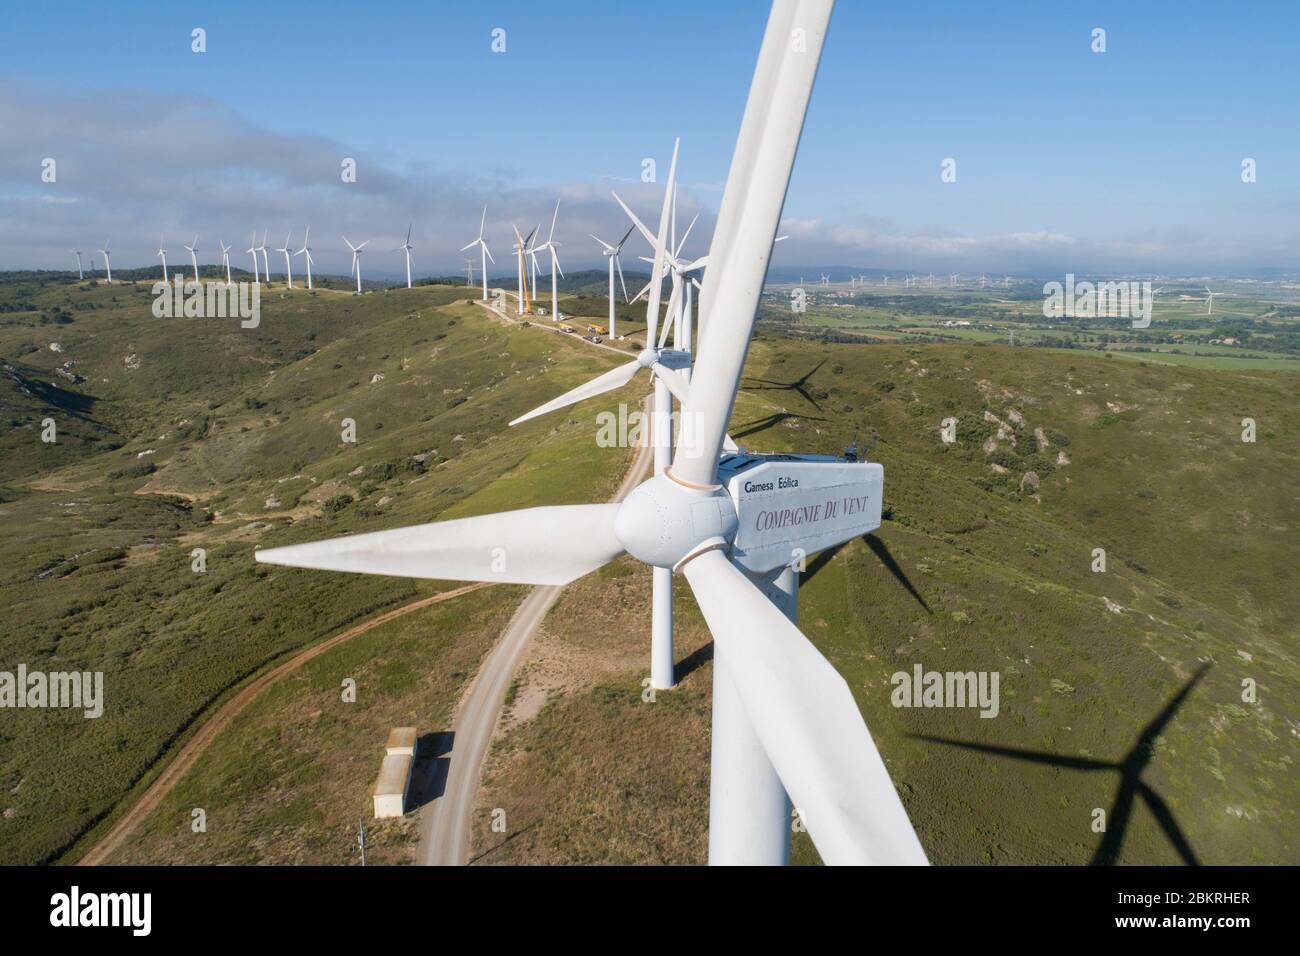 Frankreich, Aude, Nevian, Windpark Grande Garrigue de Nevian, bestehend aus 21 Windturbinen, 0,85 MW gamesa eolica Turbine für eine Gesamtleistung von 17.55 MW, Compagnie du vent LCV, Engie Green, Tochtergesellschaft von '' Engie spezialisiert auf erneuerbare Energien (Luftaufnahme) Stockfoto